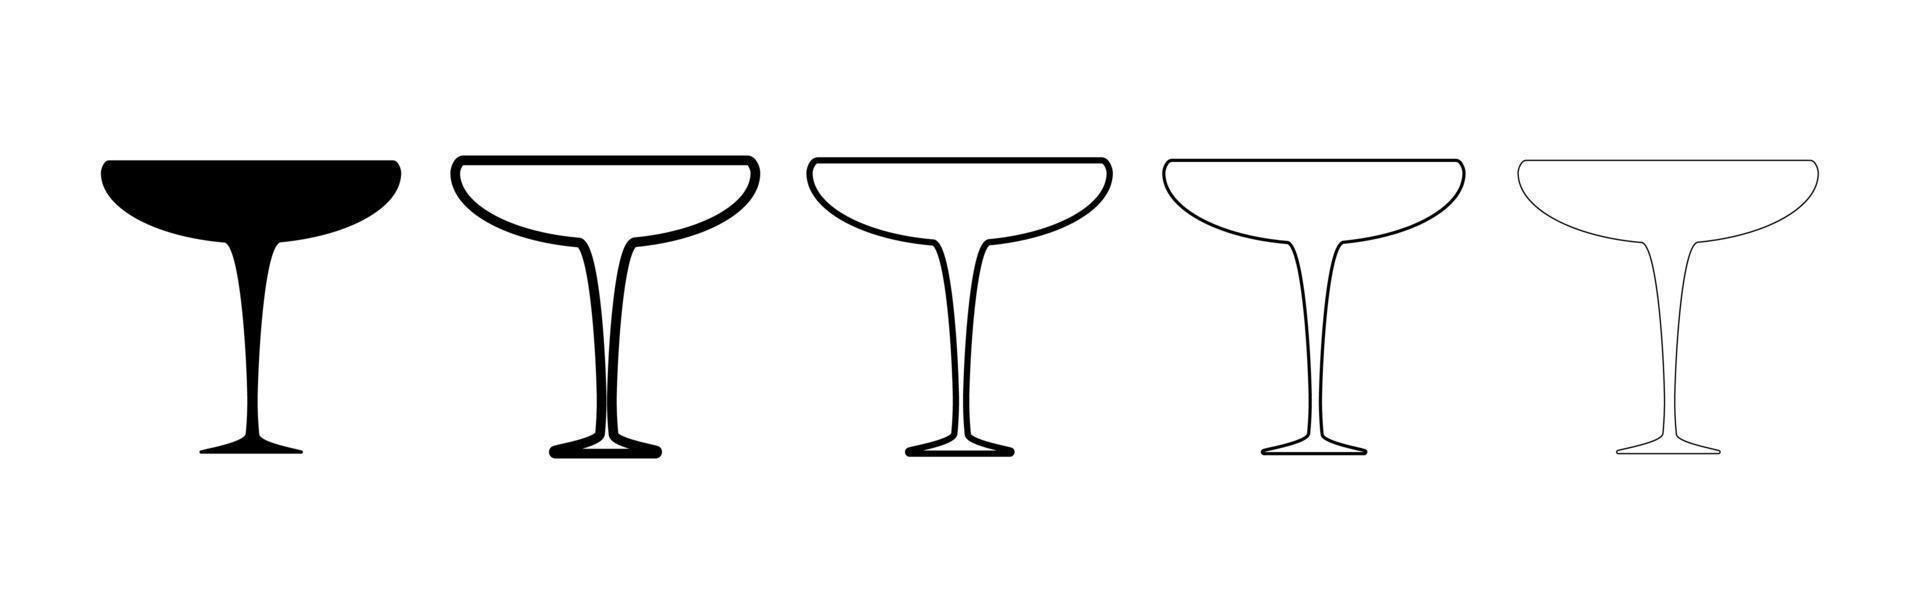 vin och martini glas siluett set. glas med olika tjocklek. glas i svart färg isolerad på vit bakgrund. silhouette martini glas Ikonuppsättning. modern linjekonstdesign. vektor